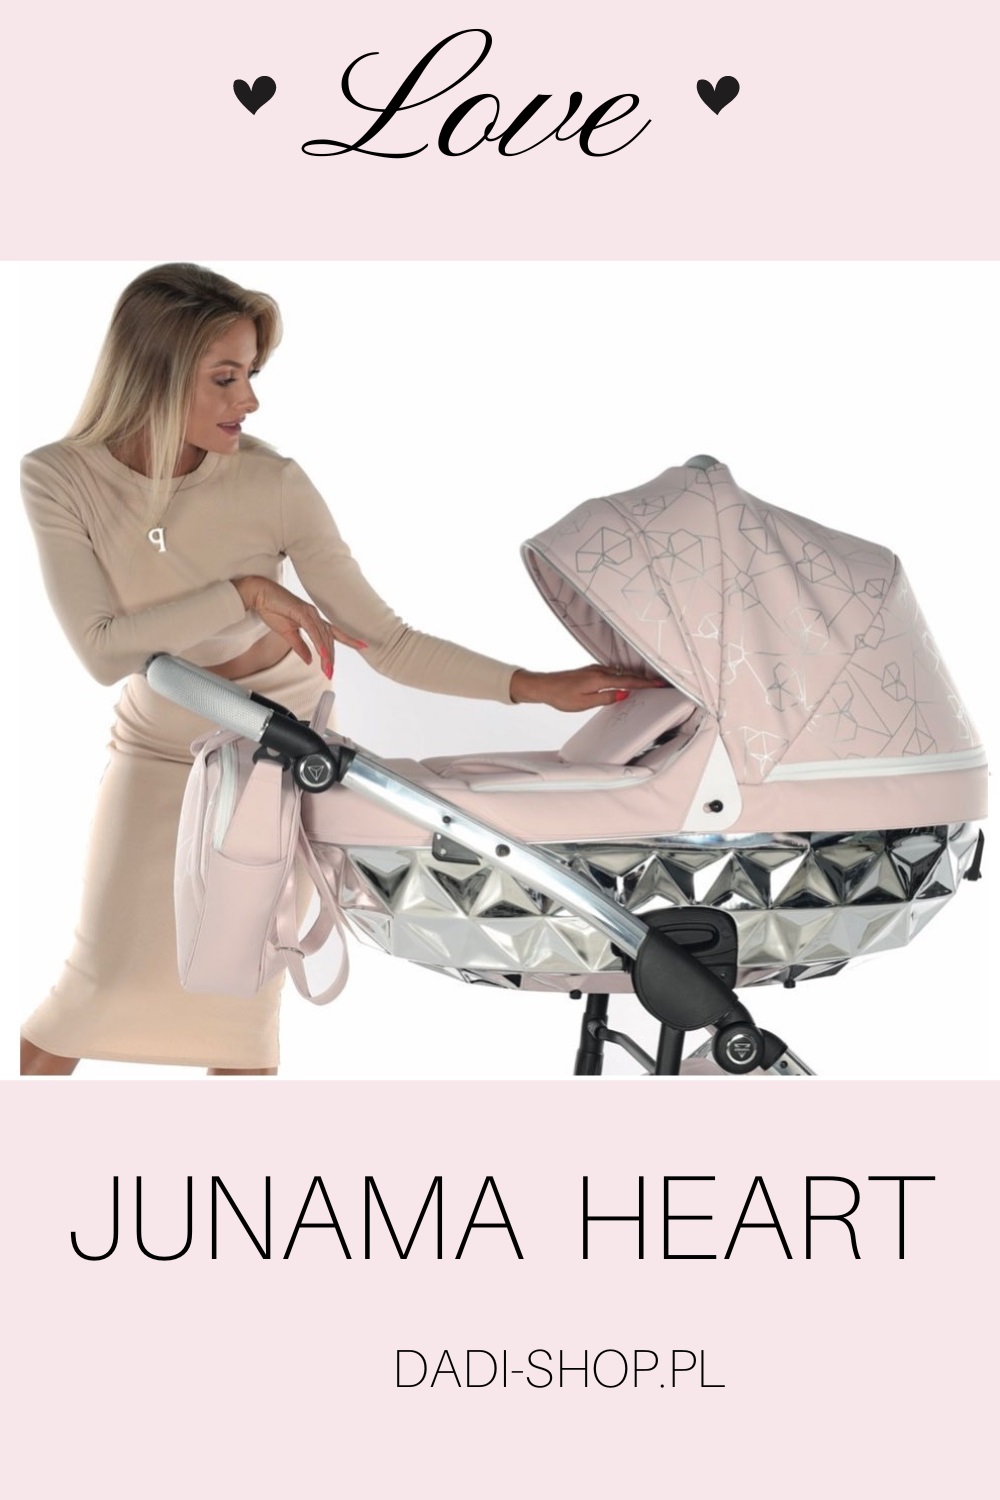 Junama Heart jasny róż Najlepsze wózki dziecięce dla dziewczynki modne dadi shop